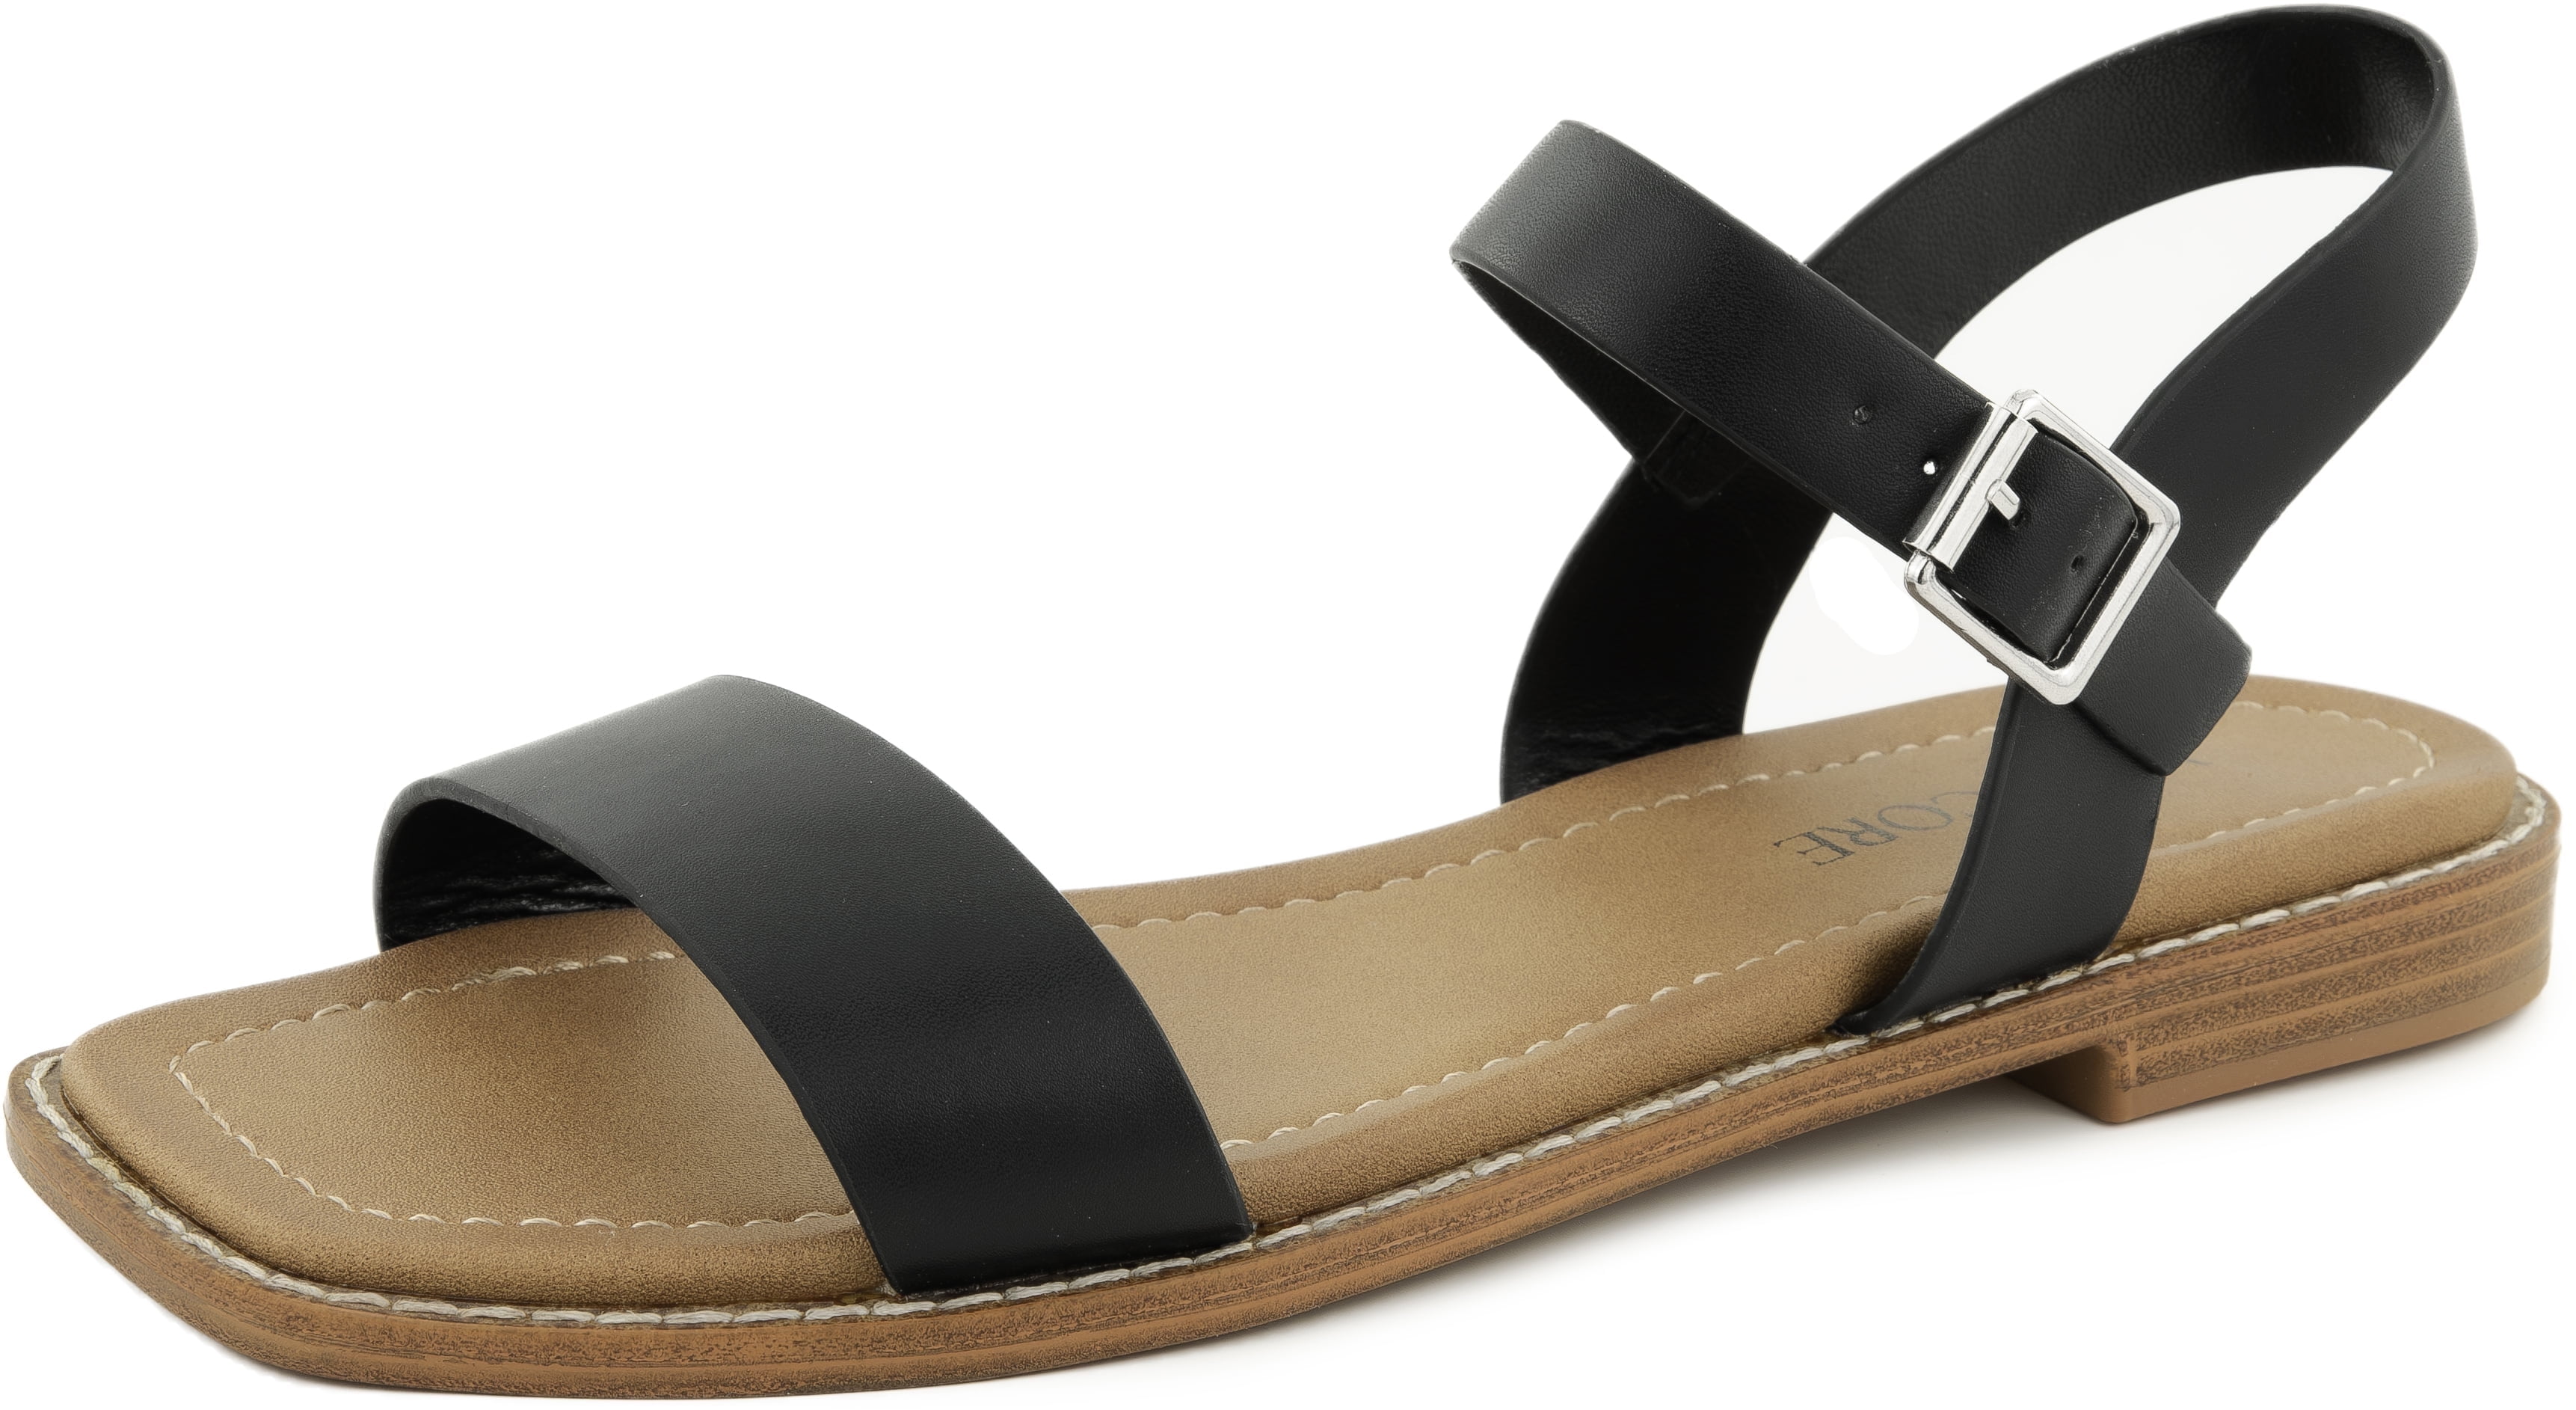 VENECORE Calie 2 Strap Sandals for Women - Comfortable Summer Flat Sandals, Black, US 8M ...